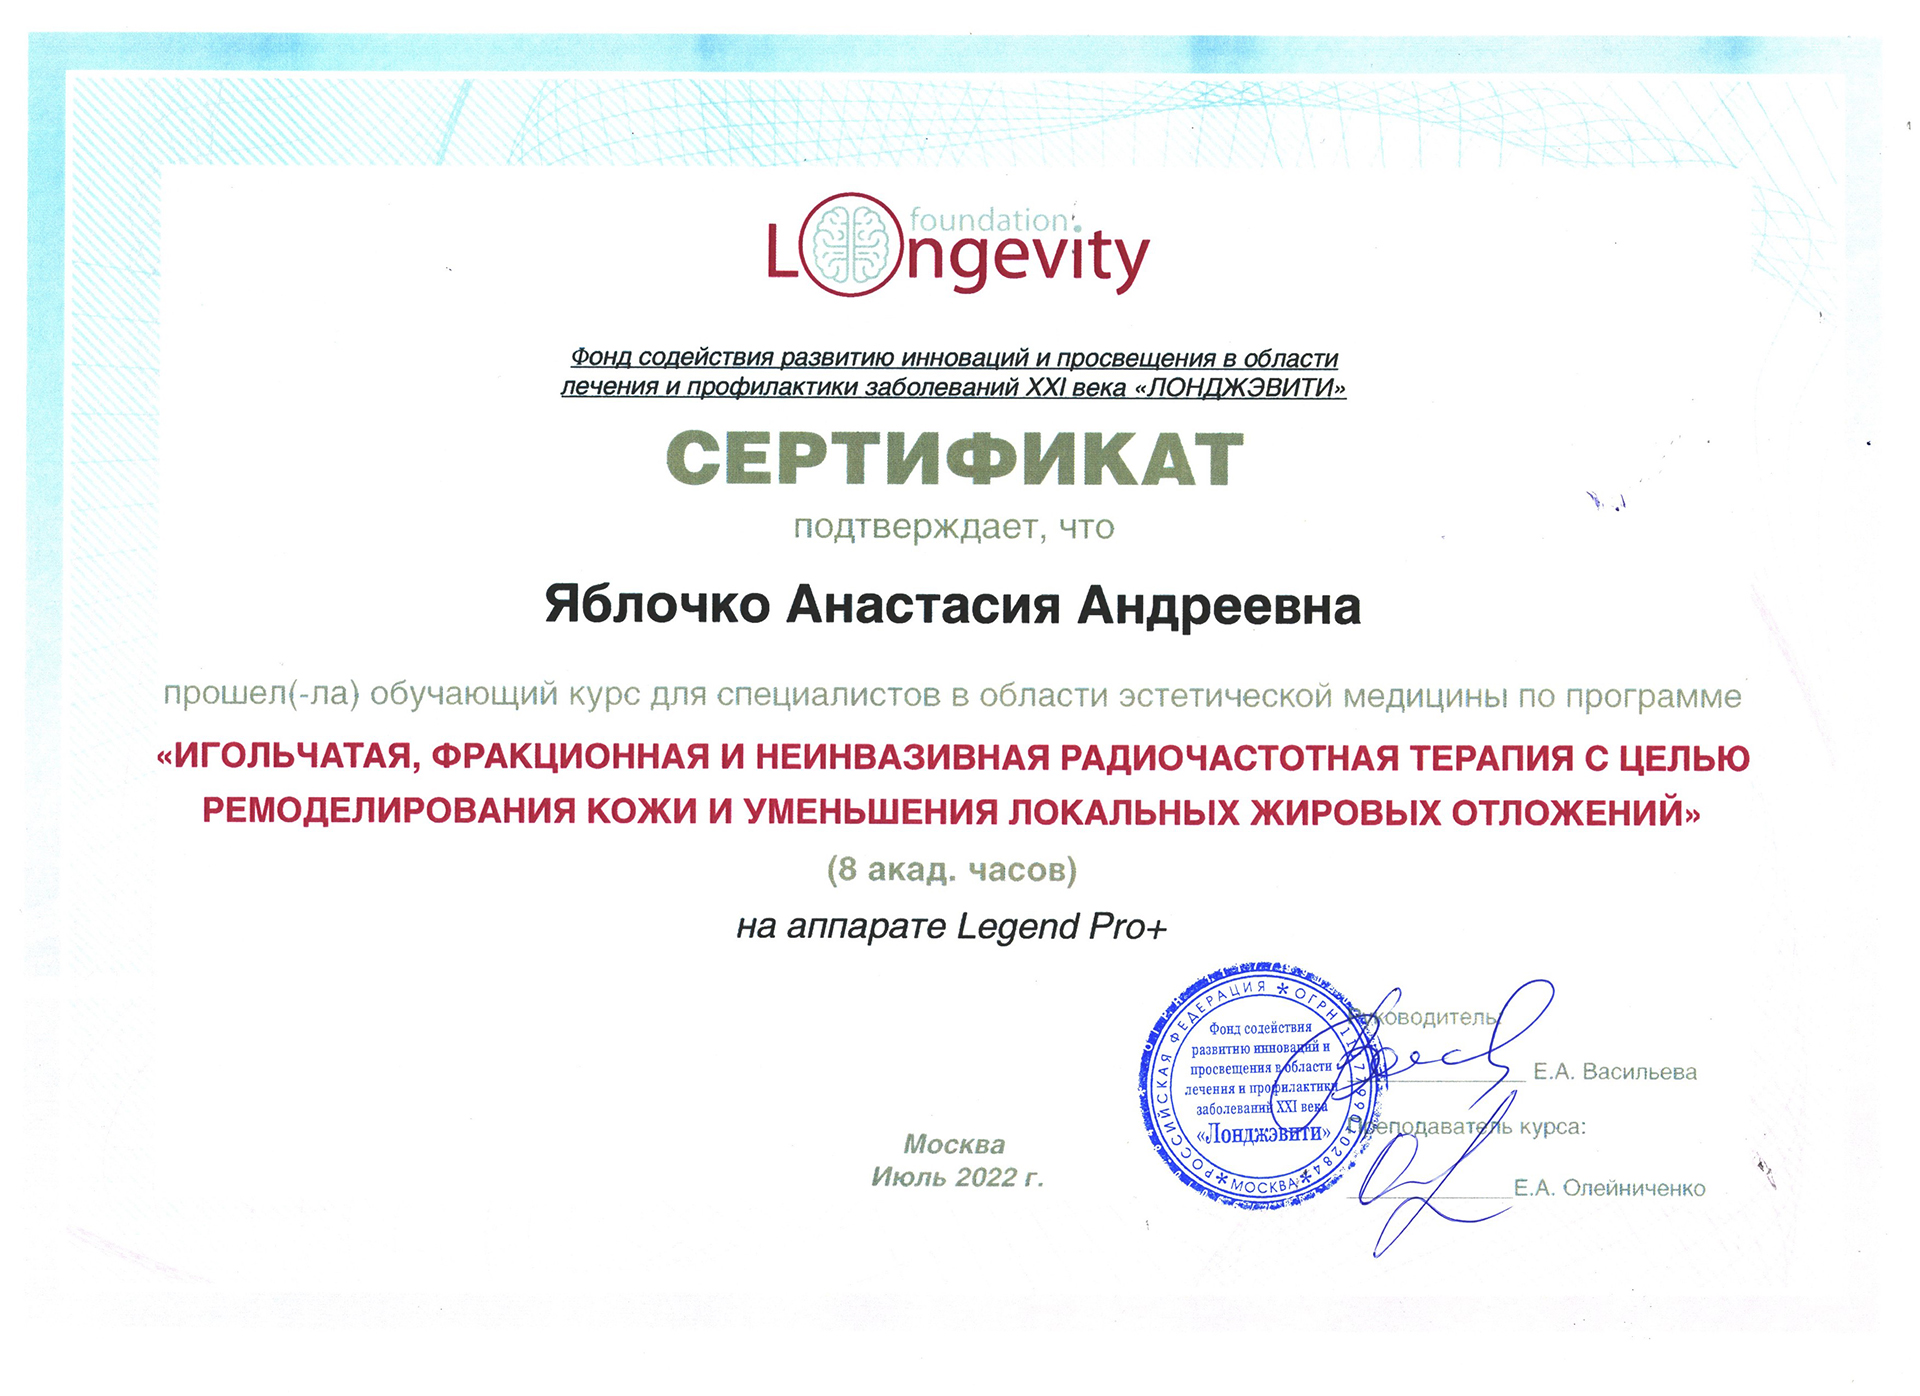 Сертификат — Программа «Игольчатая, фракционная и неинвазивная радиочастотная терапия». Яблочко Анастасия Андреевна